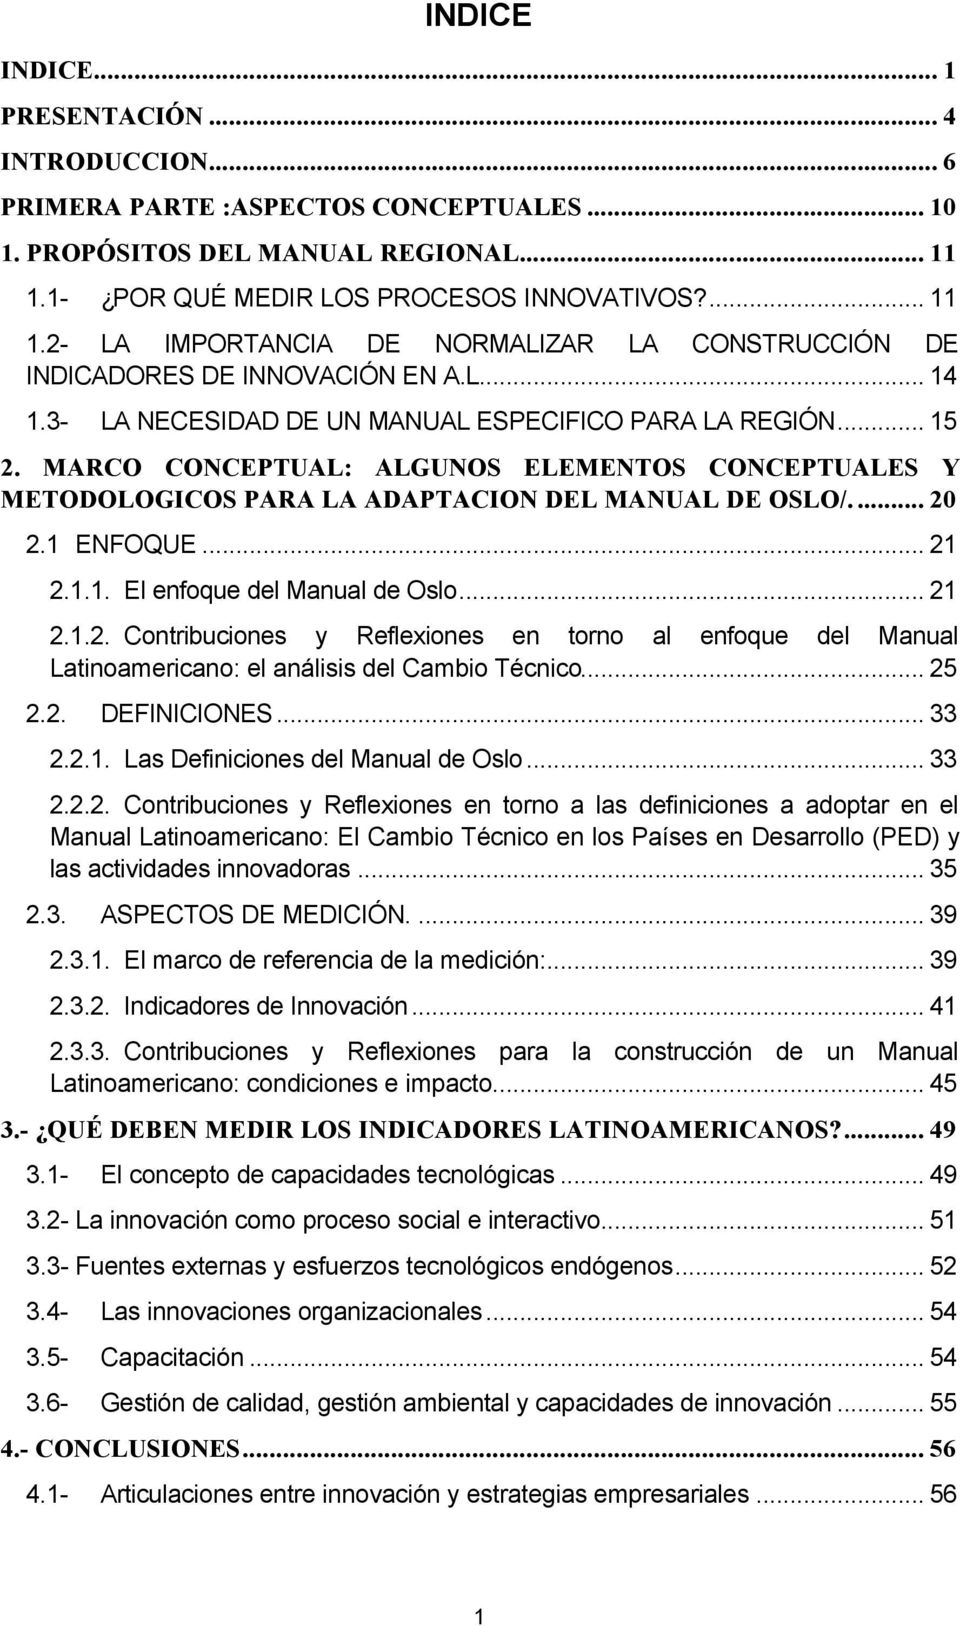 .. 15 2. MARCO CONCEPTUAL: ALGUNOS ELEMENTOS CONCEPTUALES Y METODOLOGICOS PARA LA ADAPTACION DEL MANUAL DE OSLO/.... 20 2.1 ENFOQUE... 21 2.1.1. El enfoque del Manual de Oslo... 21 2.1.2. Contribuciones y Reflexiones en torno al enfoque del Manual Latinoamericano: el análisis del Cambio Técnico.